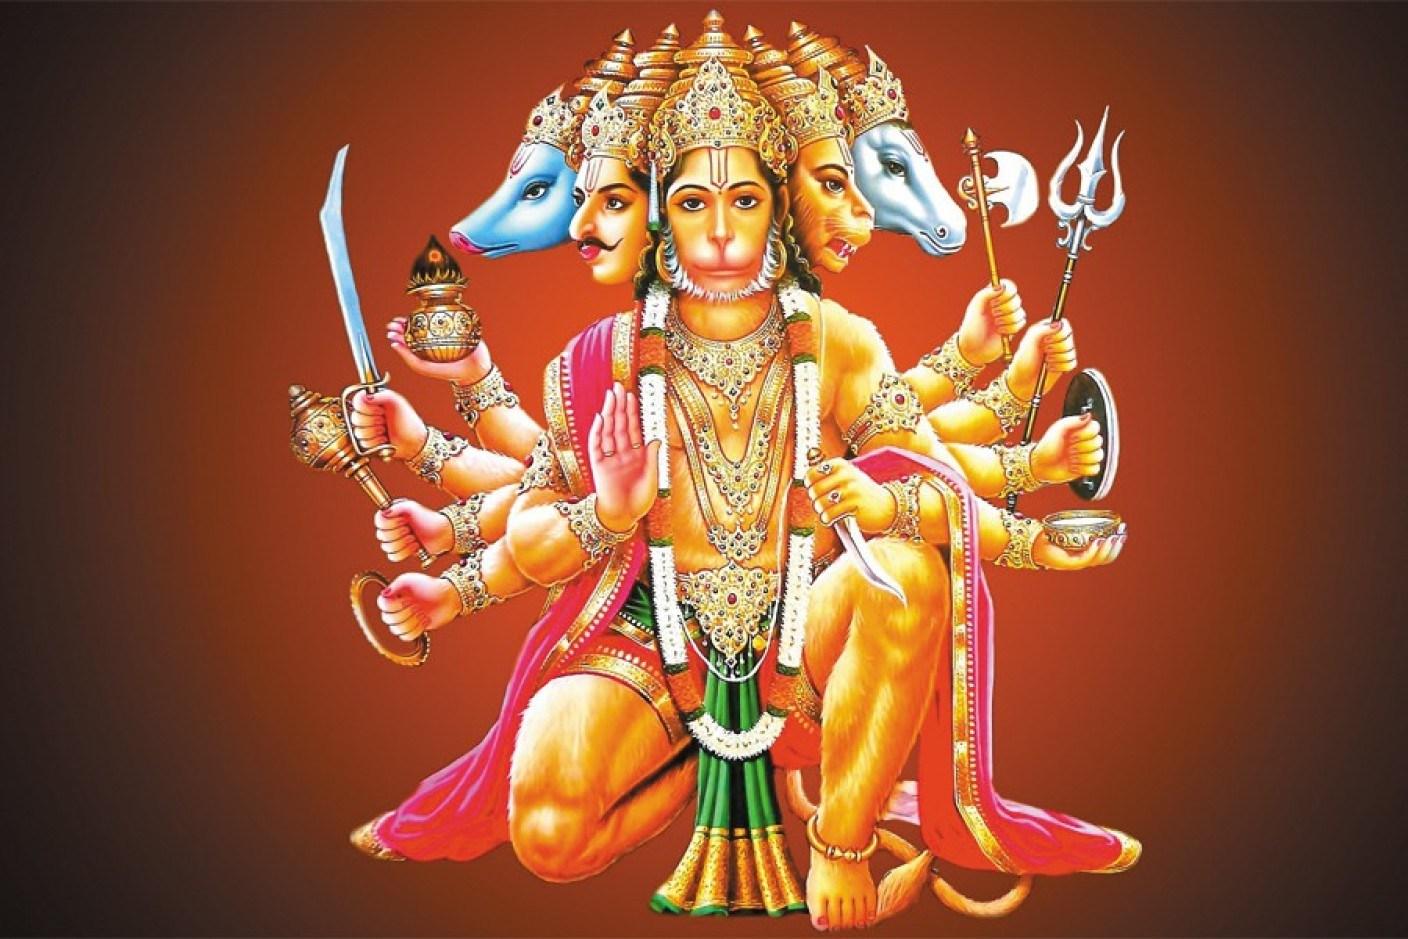 mighty hanuman wallpaper for phone  Hanuman images